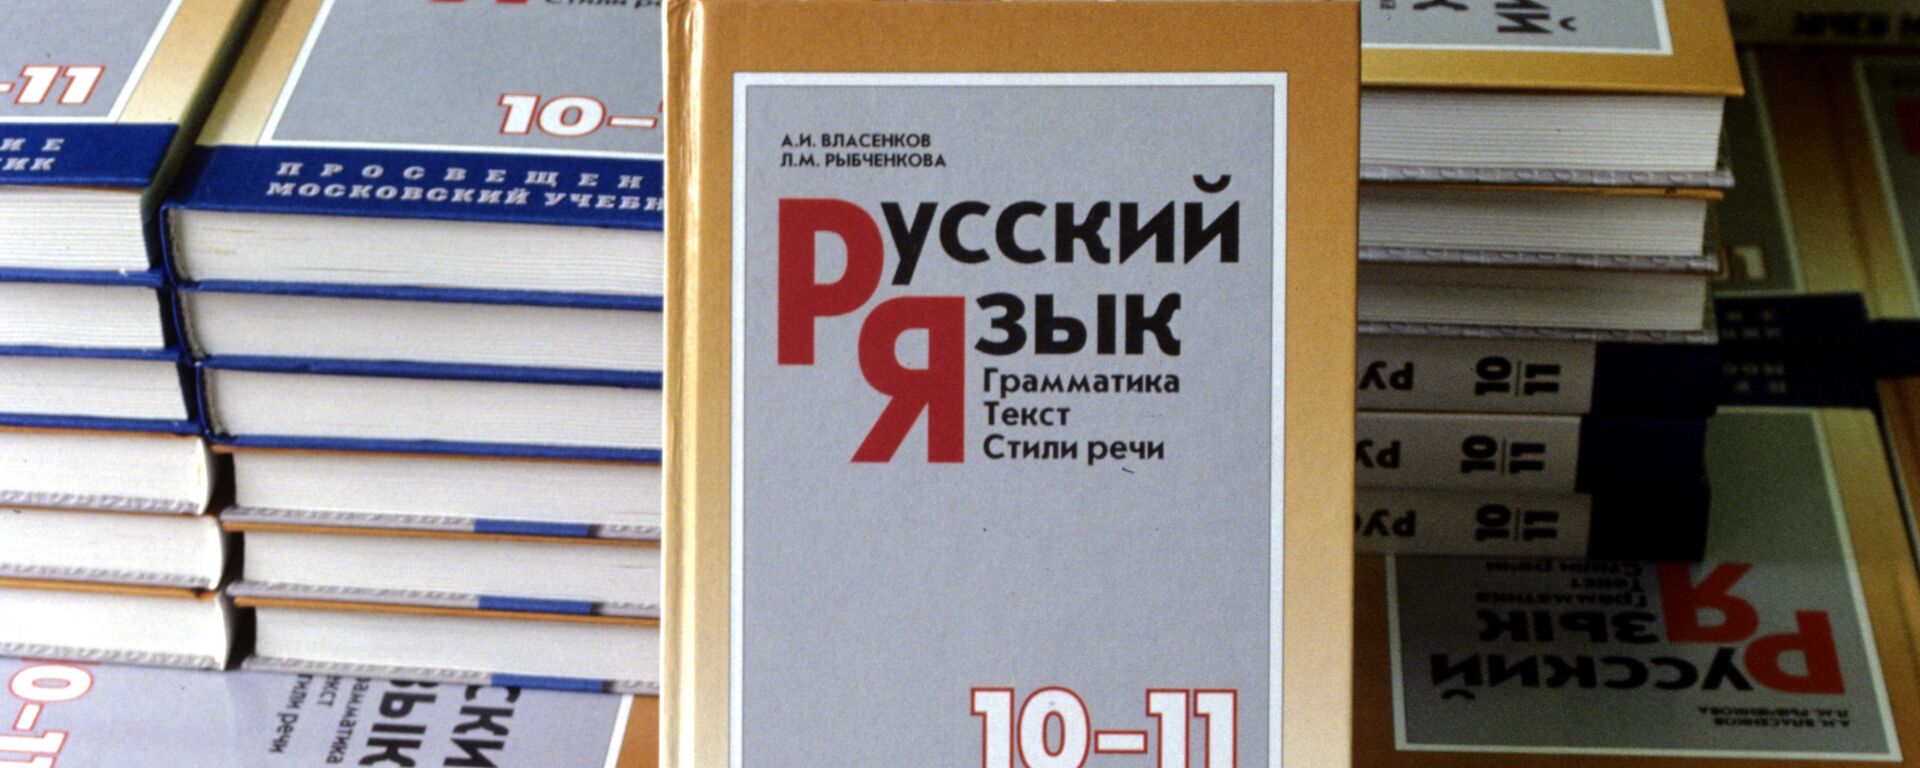 Учебник русского языка 10-11 класса, архивное фото - Sputnik Lietuva, 1920, 28.01.2021